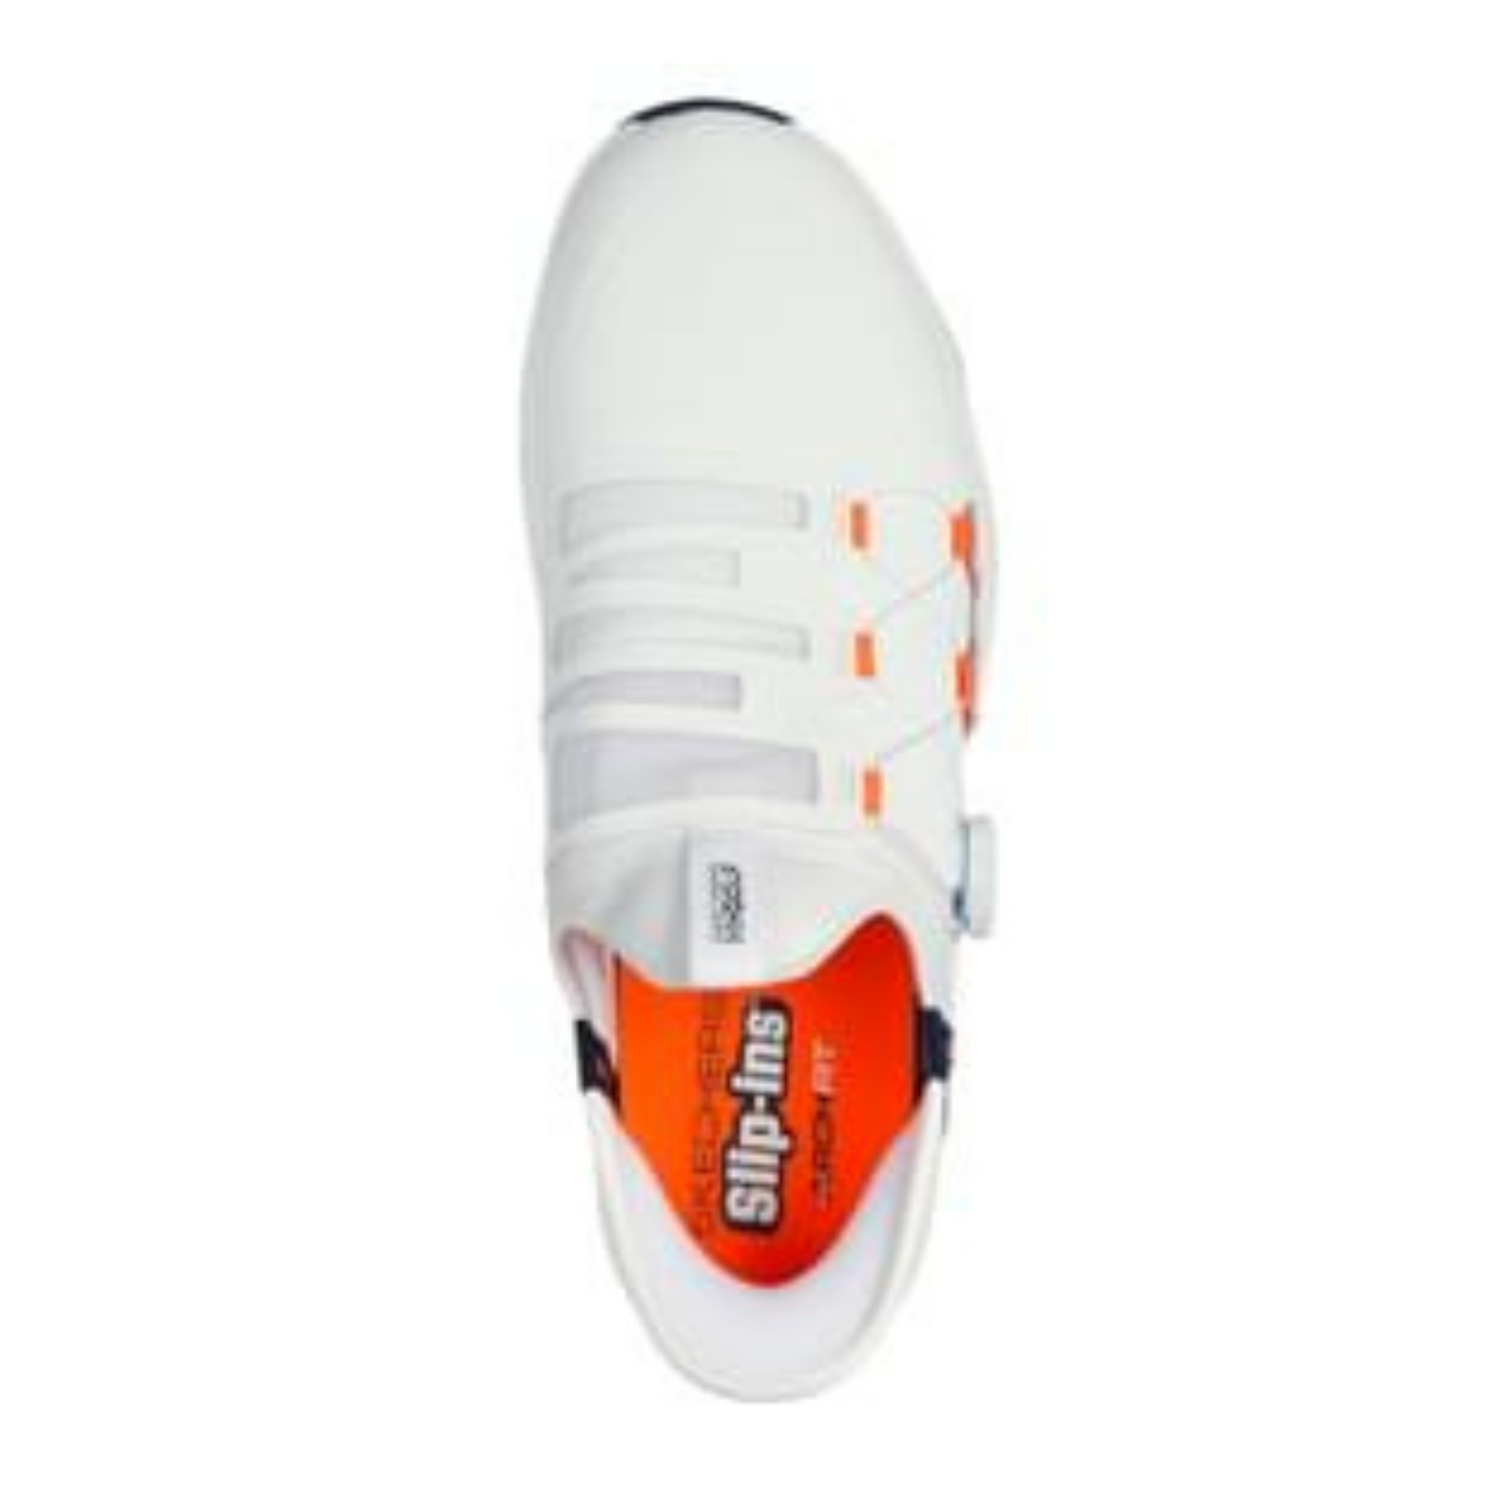 Skechers Elite Vortex Slip 'In Spiked Golf Shoes 214076 - White   